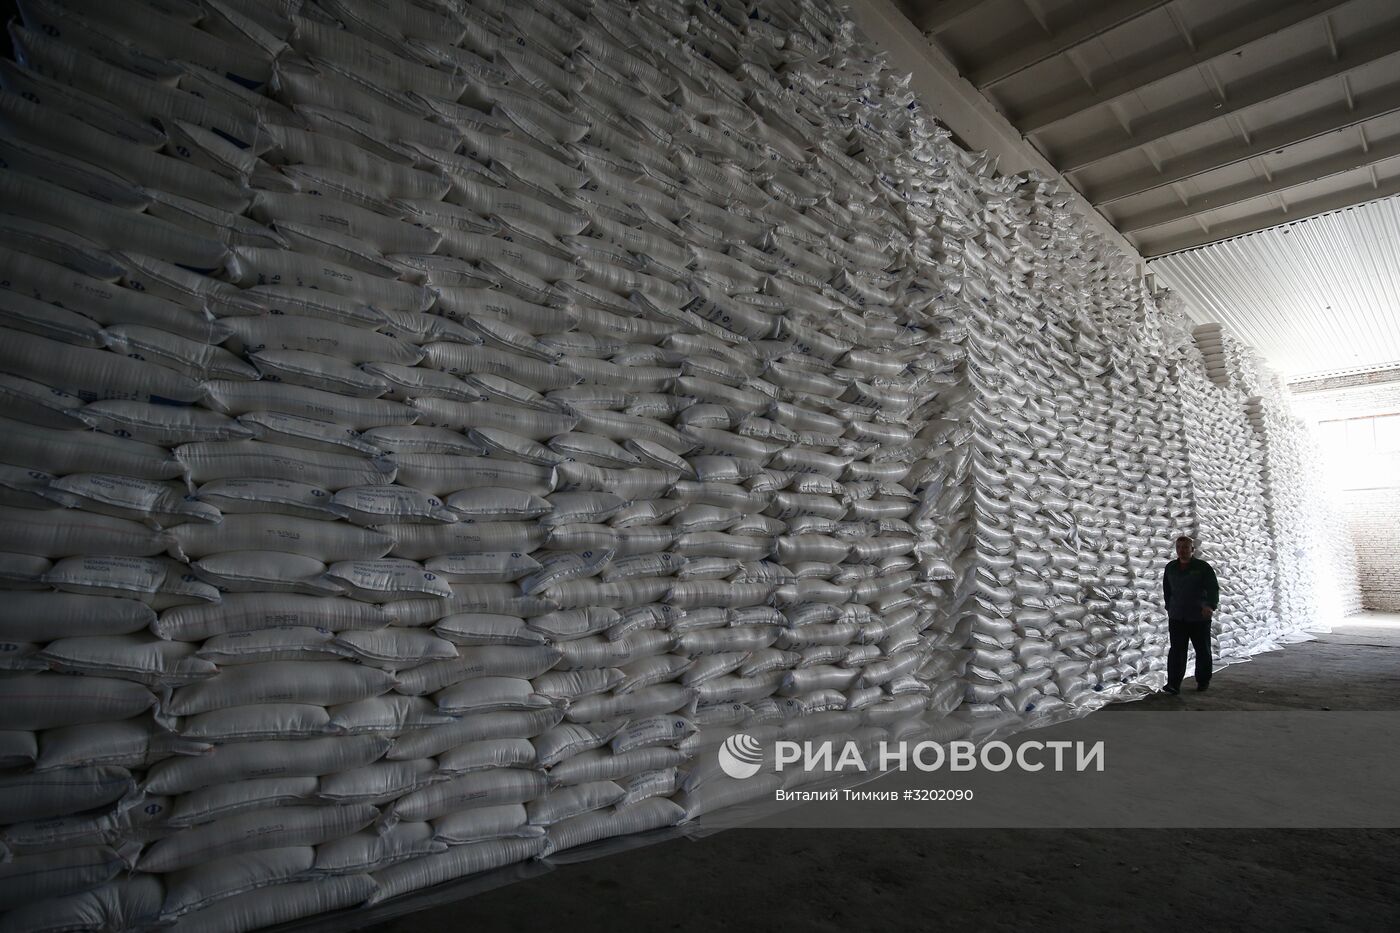 Сахарный завод "Свобода" в Краснодарском крае